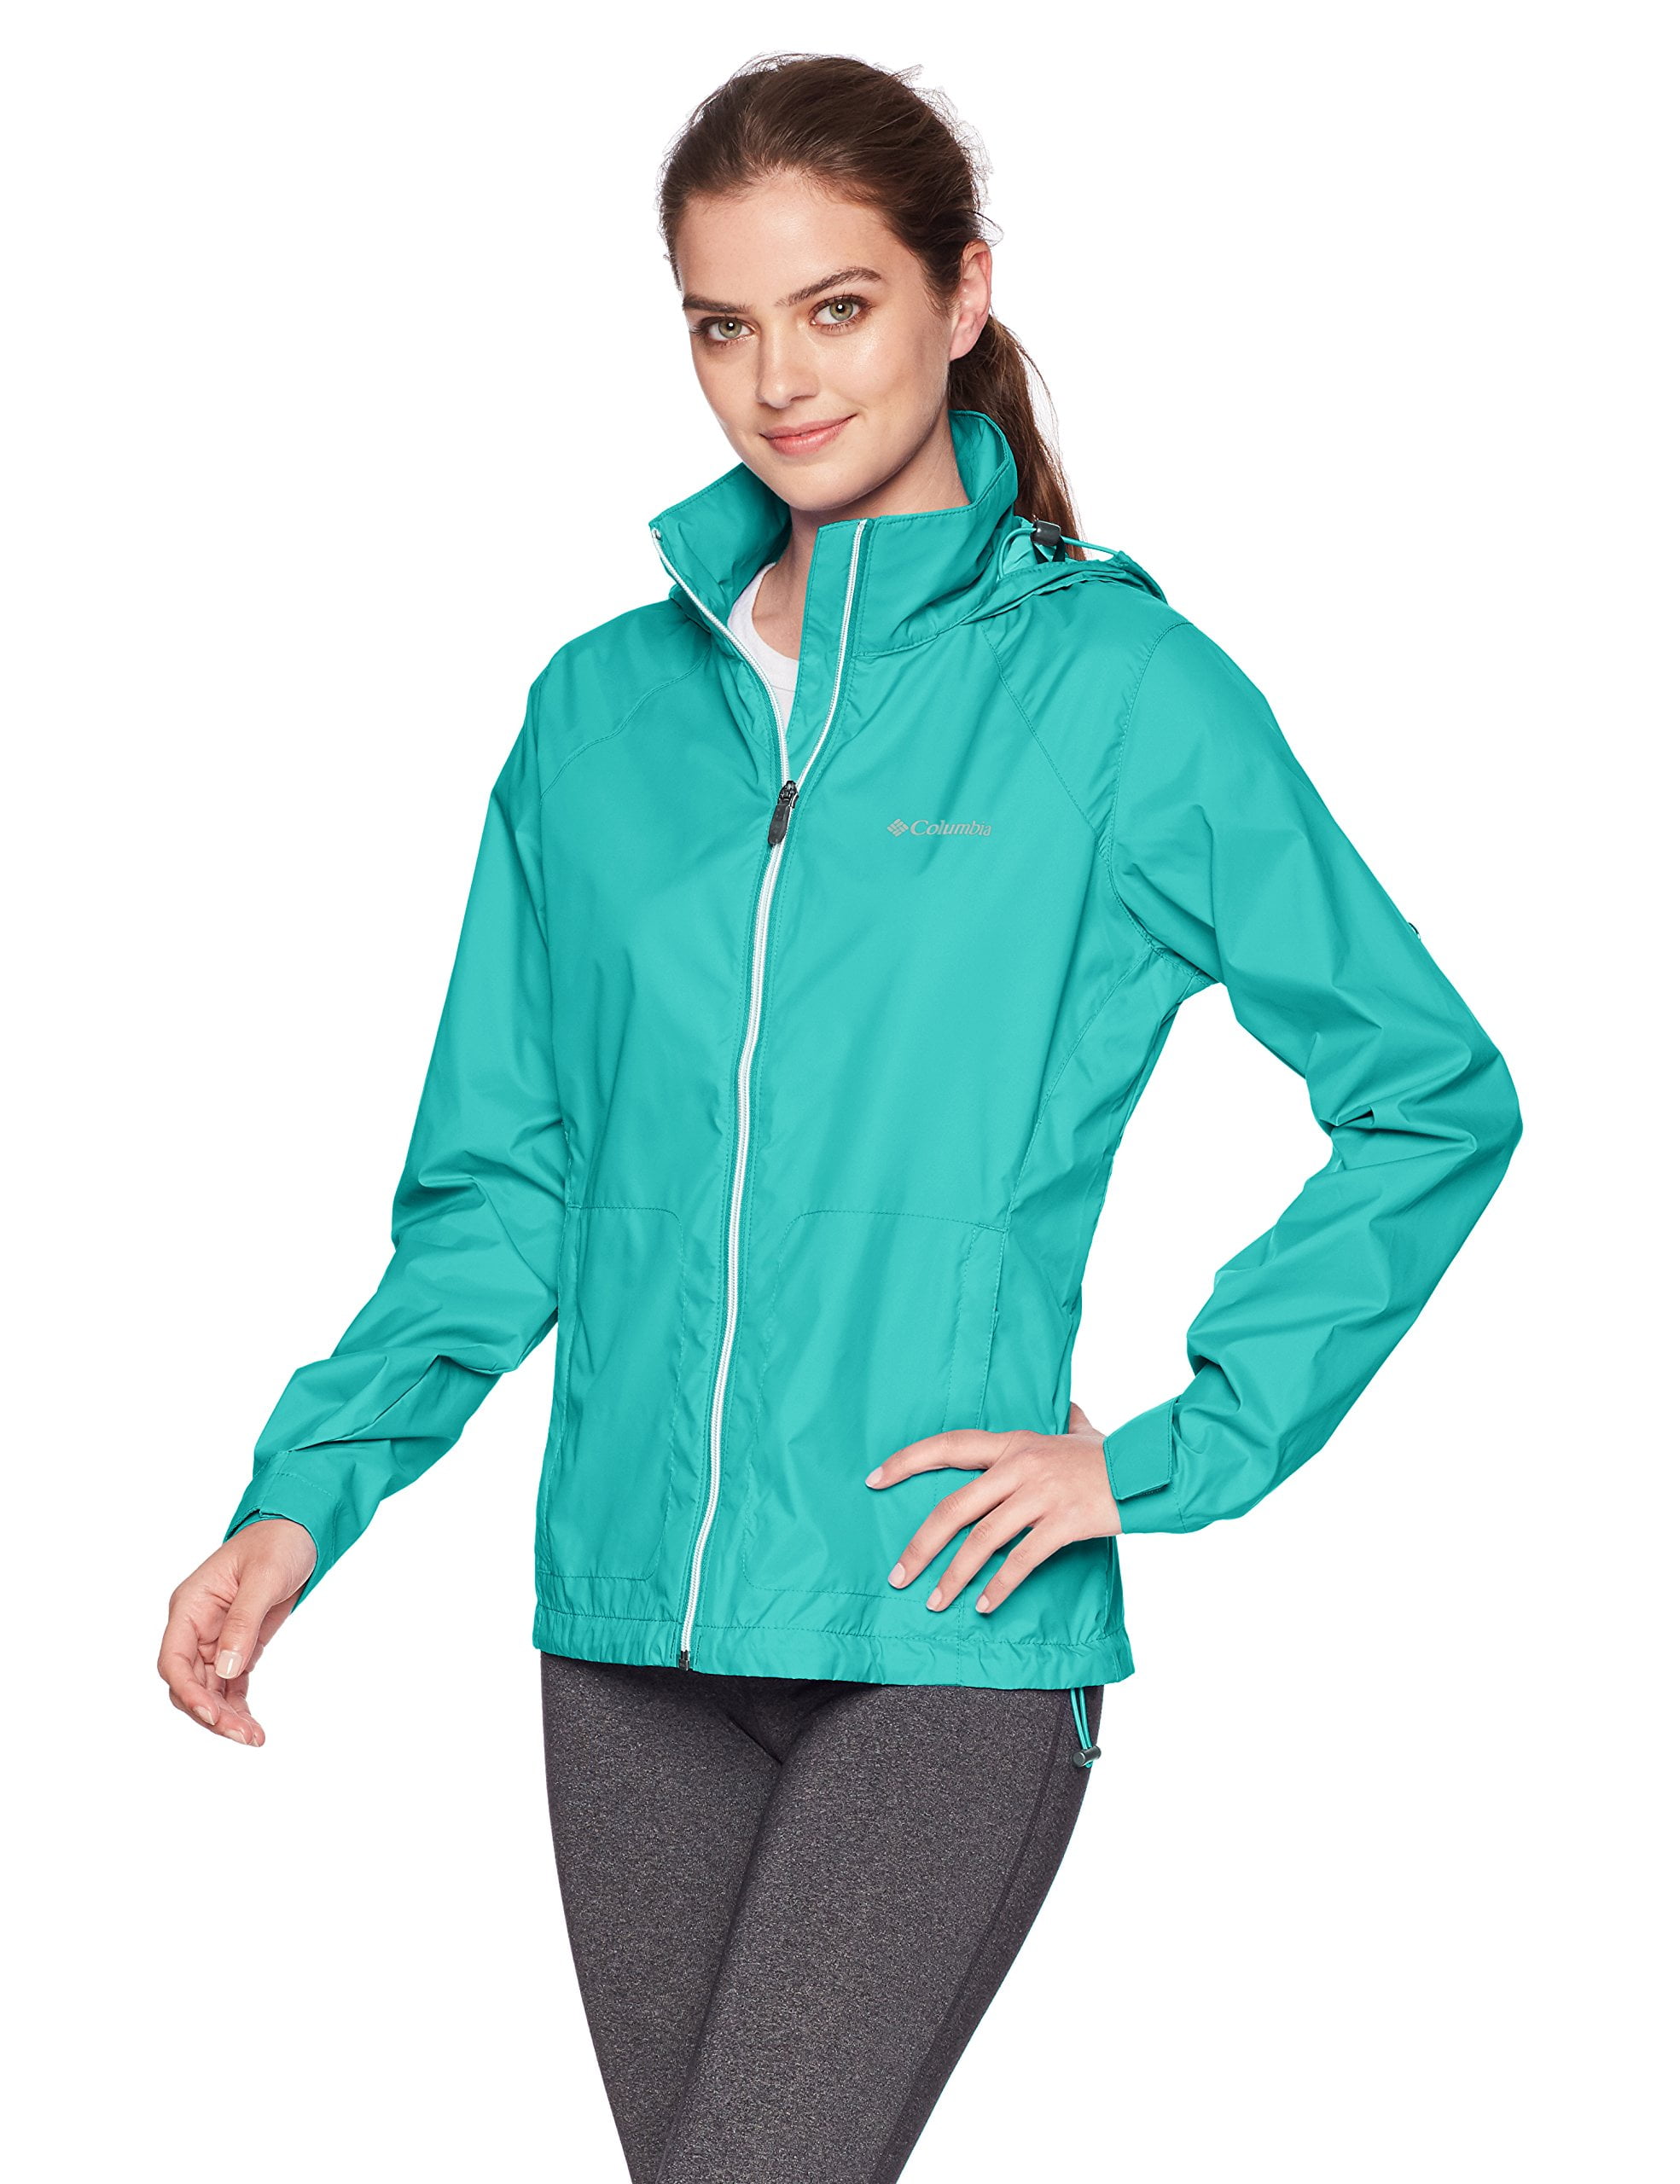 columbia women's switchback iii adjustable waterproof rain jacket